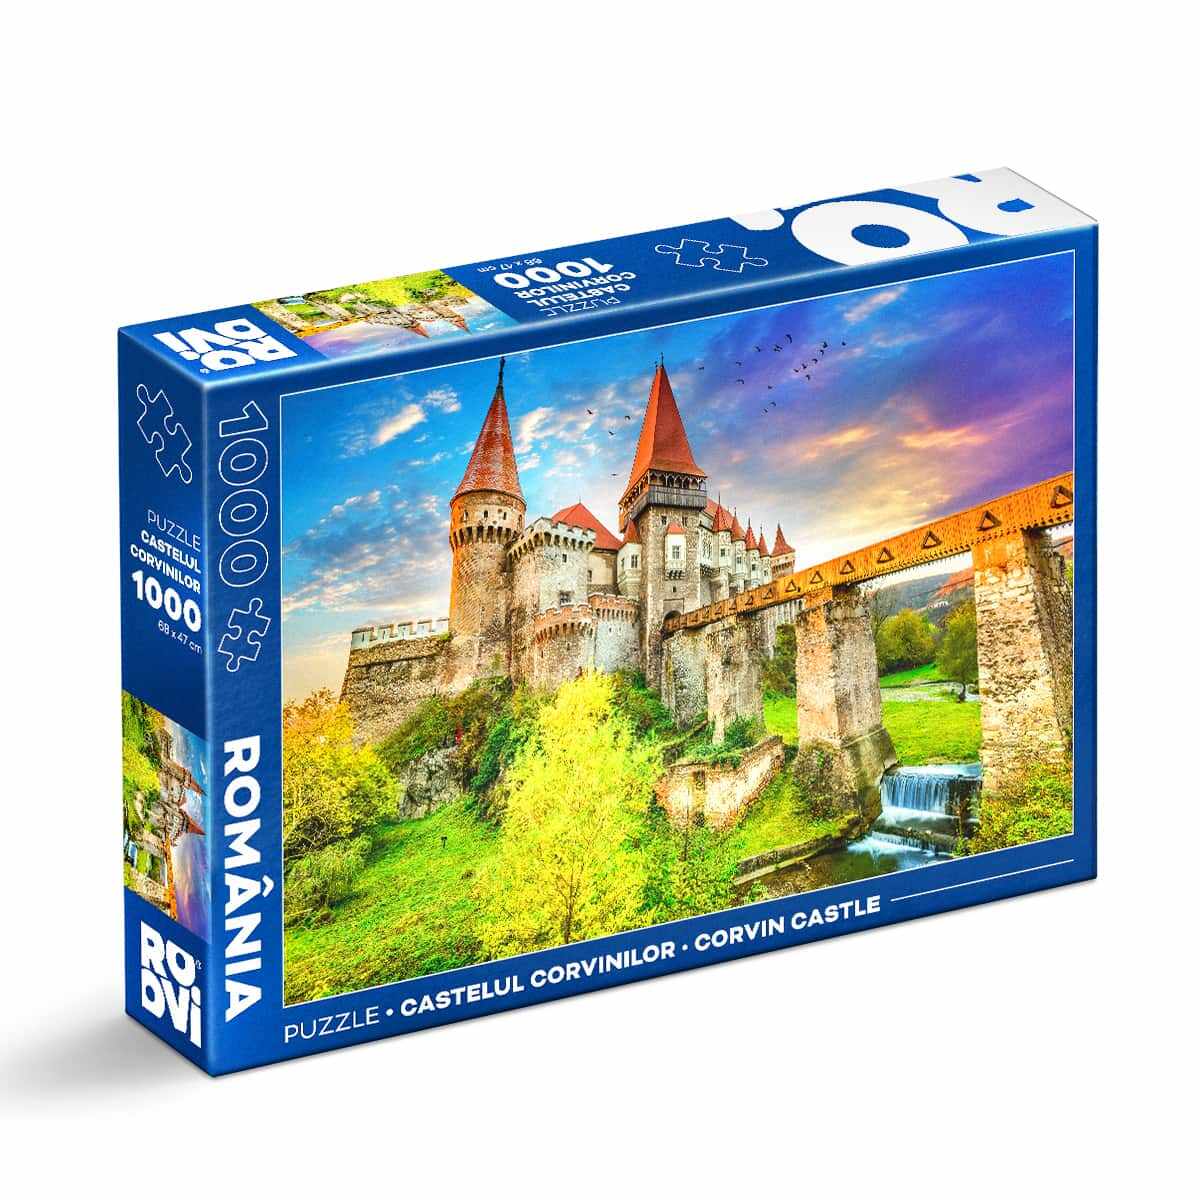 Puzzle Castelul Corvinilor - Puzzle adulți 1000 piese - Imagini din România